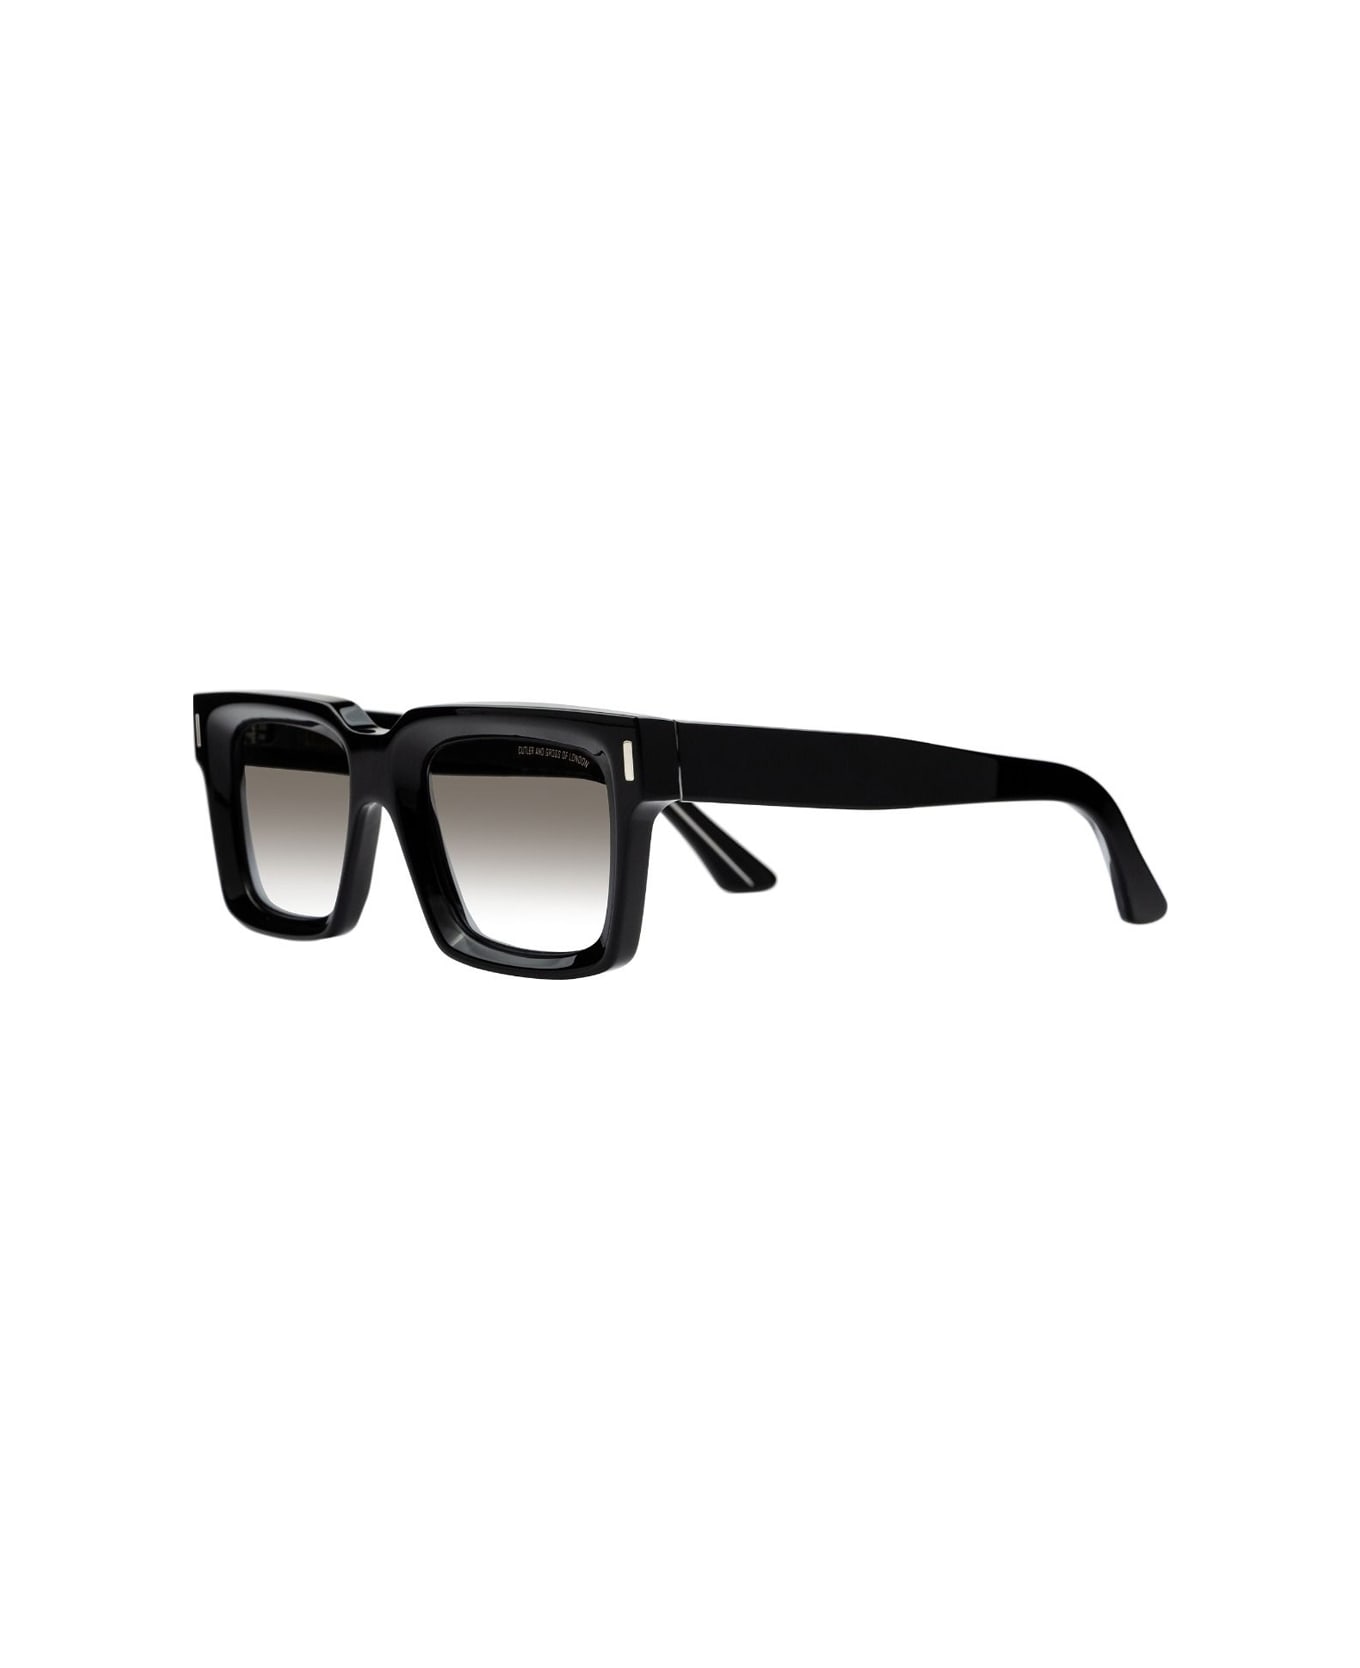 Cutler and Gross 1386 01 Sunglasses - Nero サングラス